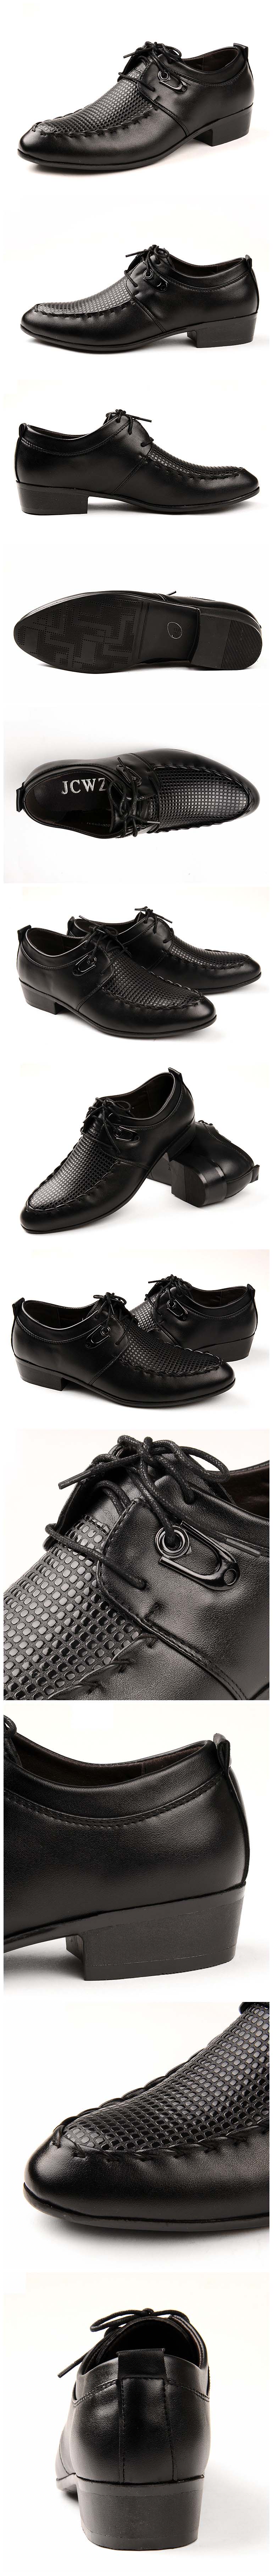 jual sepatu kerja pria dari kulit sintetis import berkualitas kami selalu menyediakan model sepatu kerja pria terbaru dan terlengkap